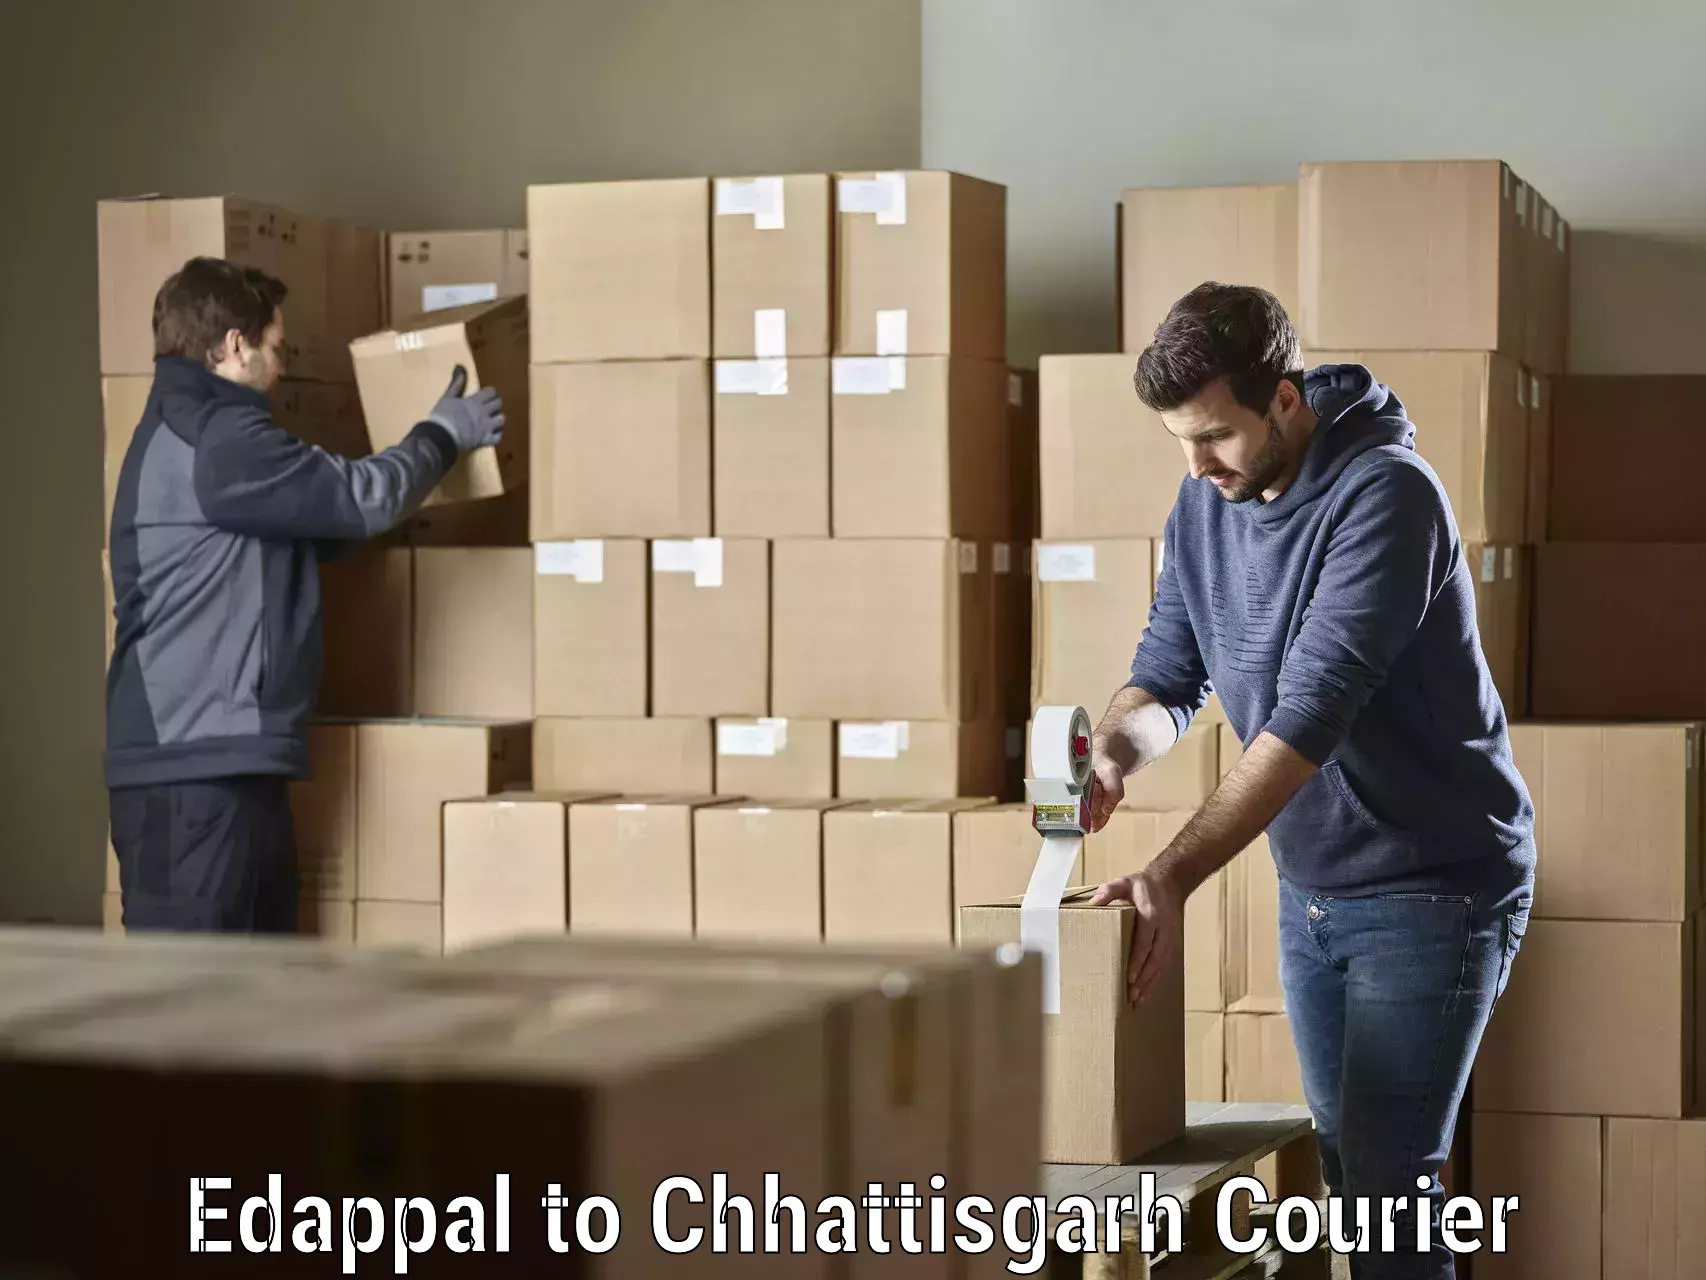 Cargo delivery service Edappal to Patna Chhattisgarh